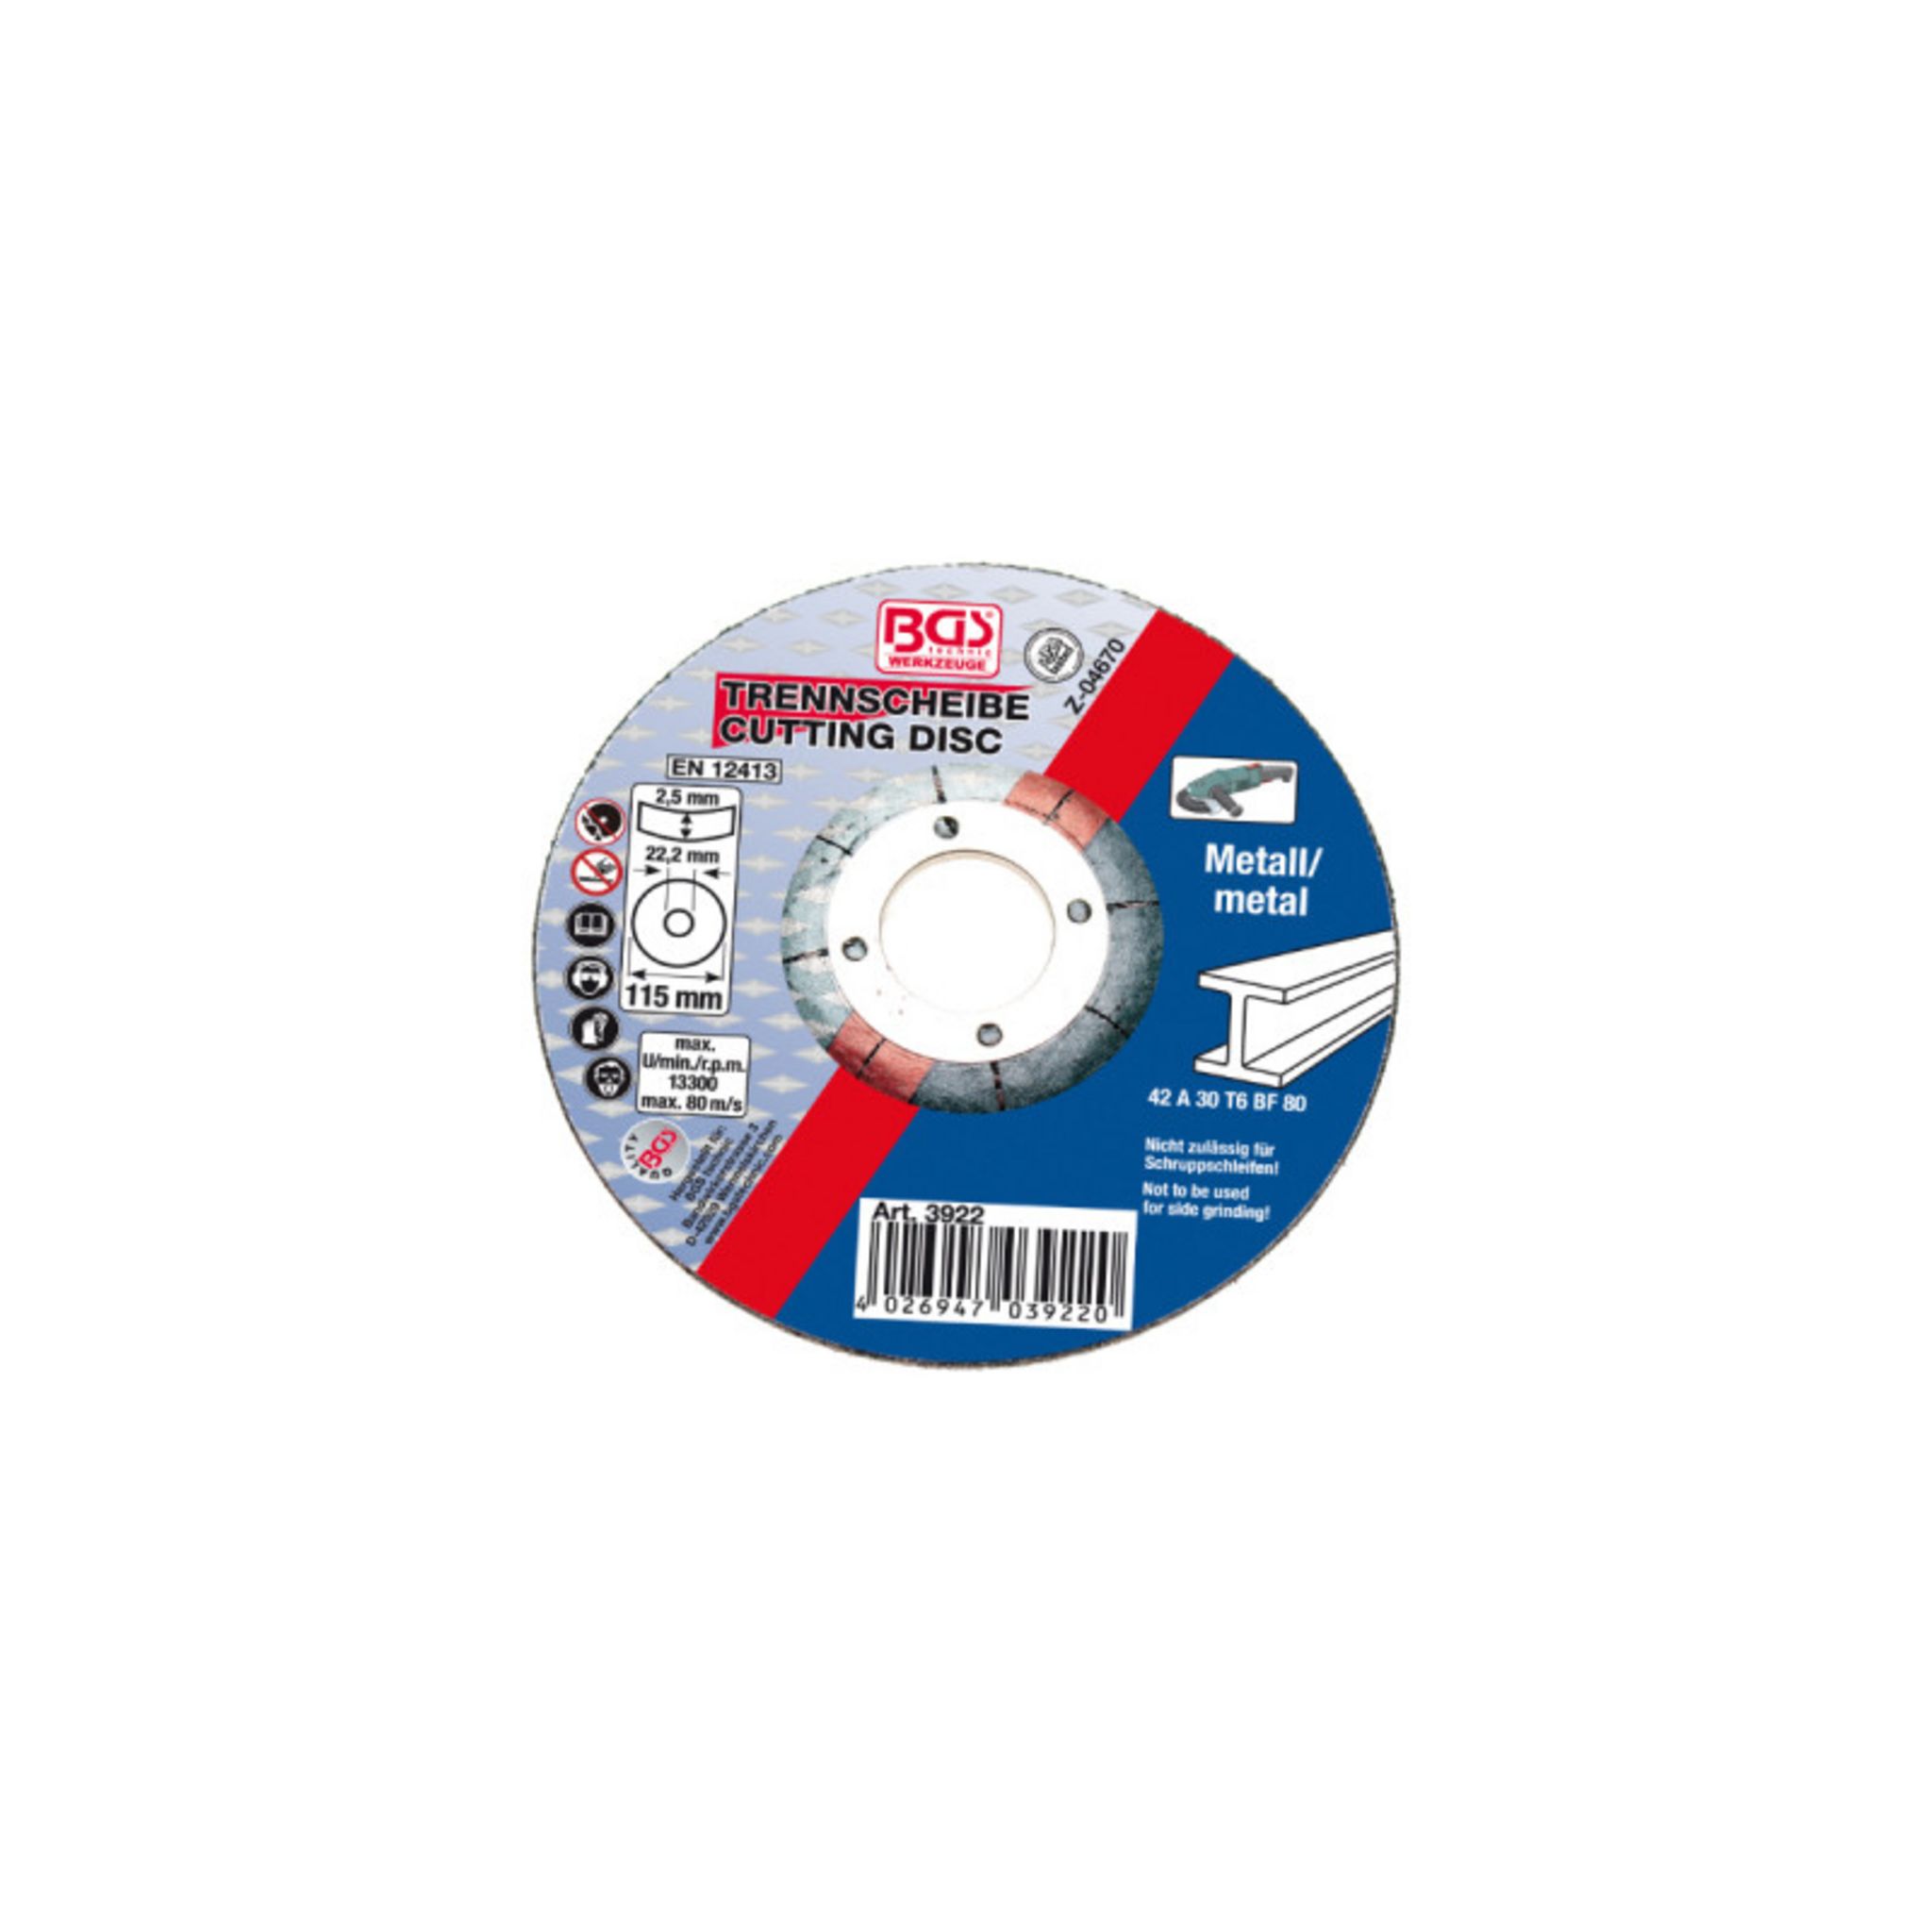 Dremel Pack de 10 disques à tronçonner EZ SpeedClic + mandrin pour métaux/plastiques  Dremel S690 pas cher 